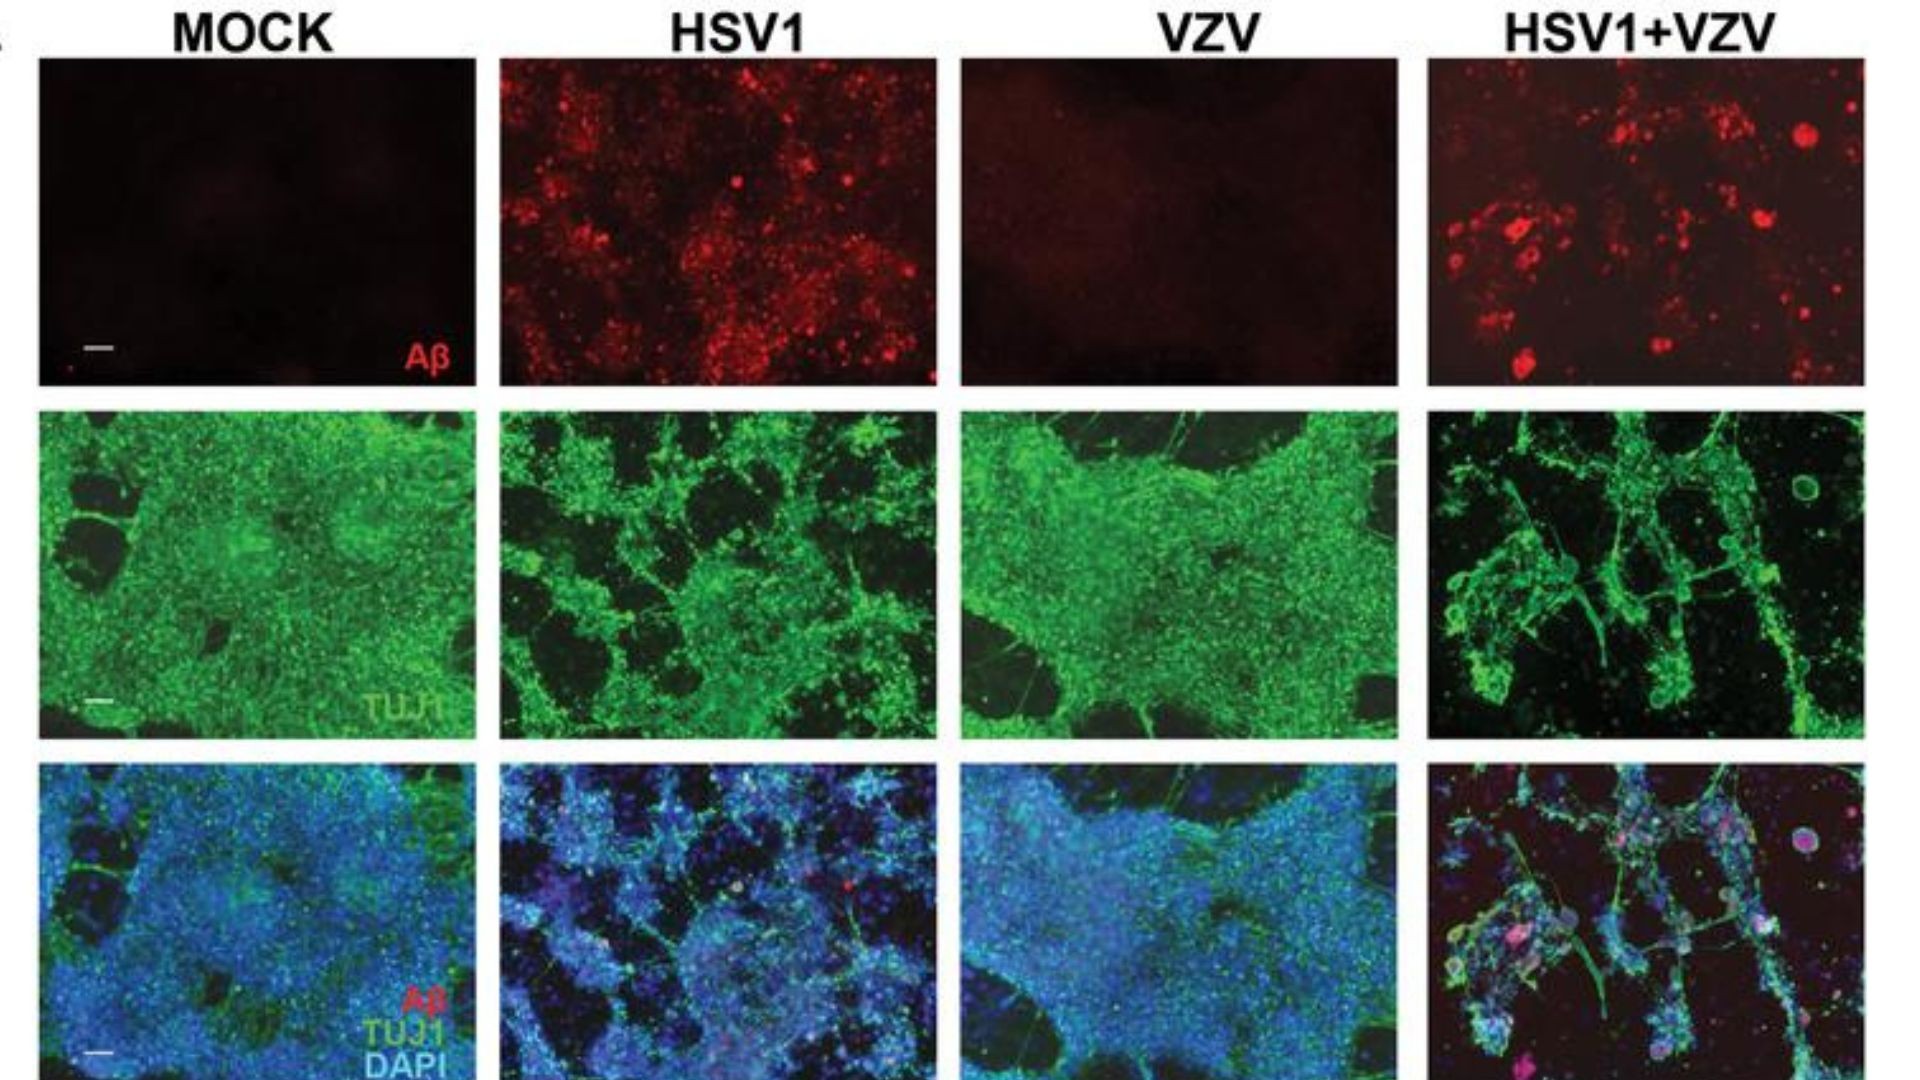 Alzheimer pode ser causado pela interação entre cepa HSV-1 do vírus da herpes comum e o vírus varicela-zóster (VZV) (Foto: Cairns, Dana M.)